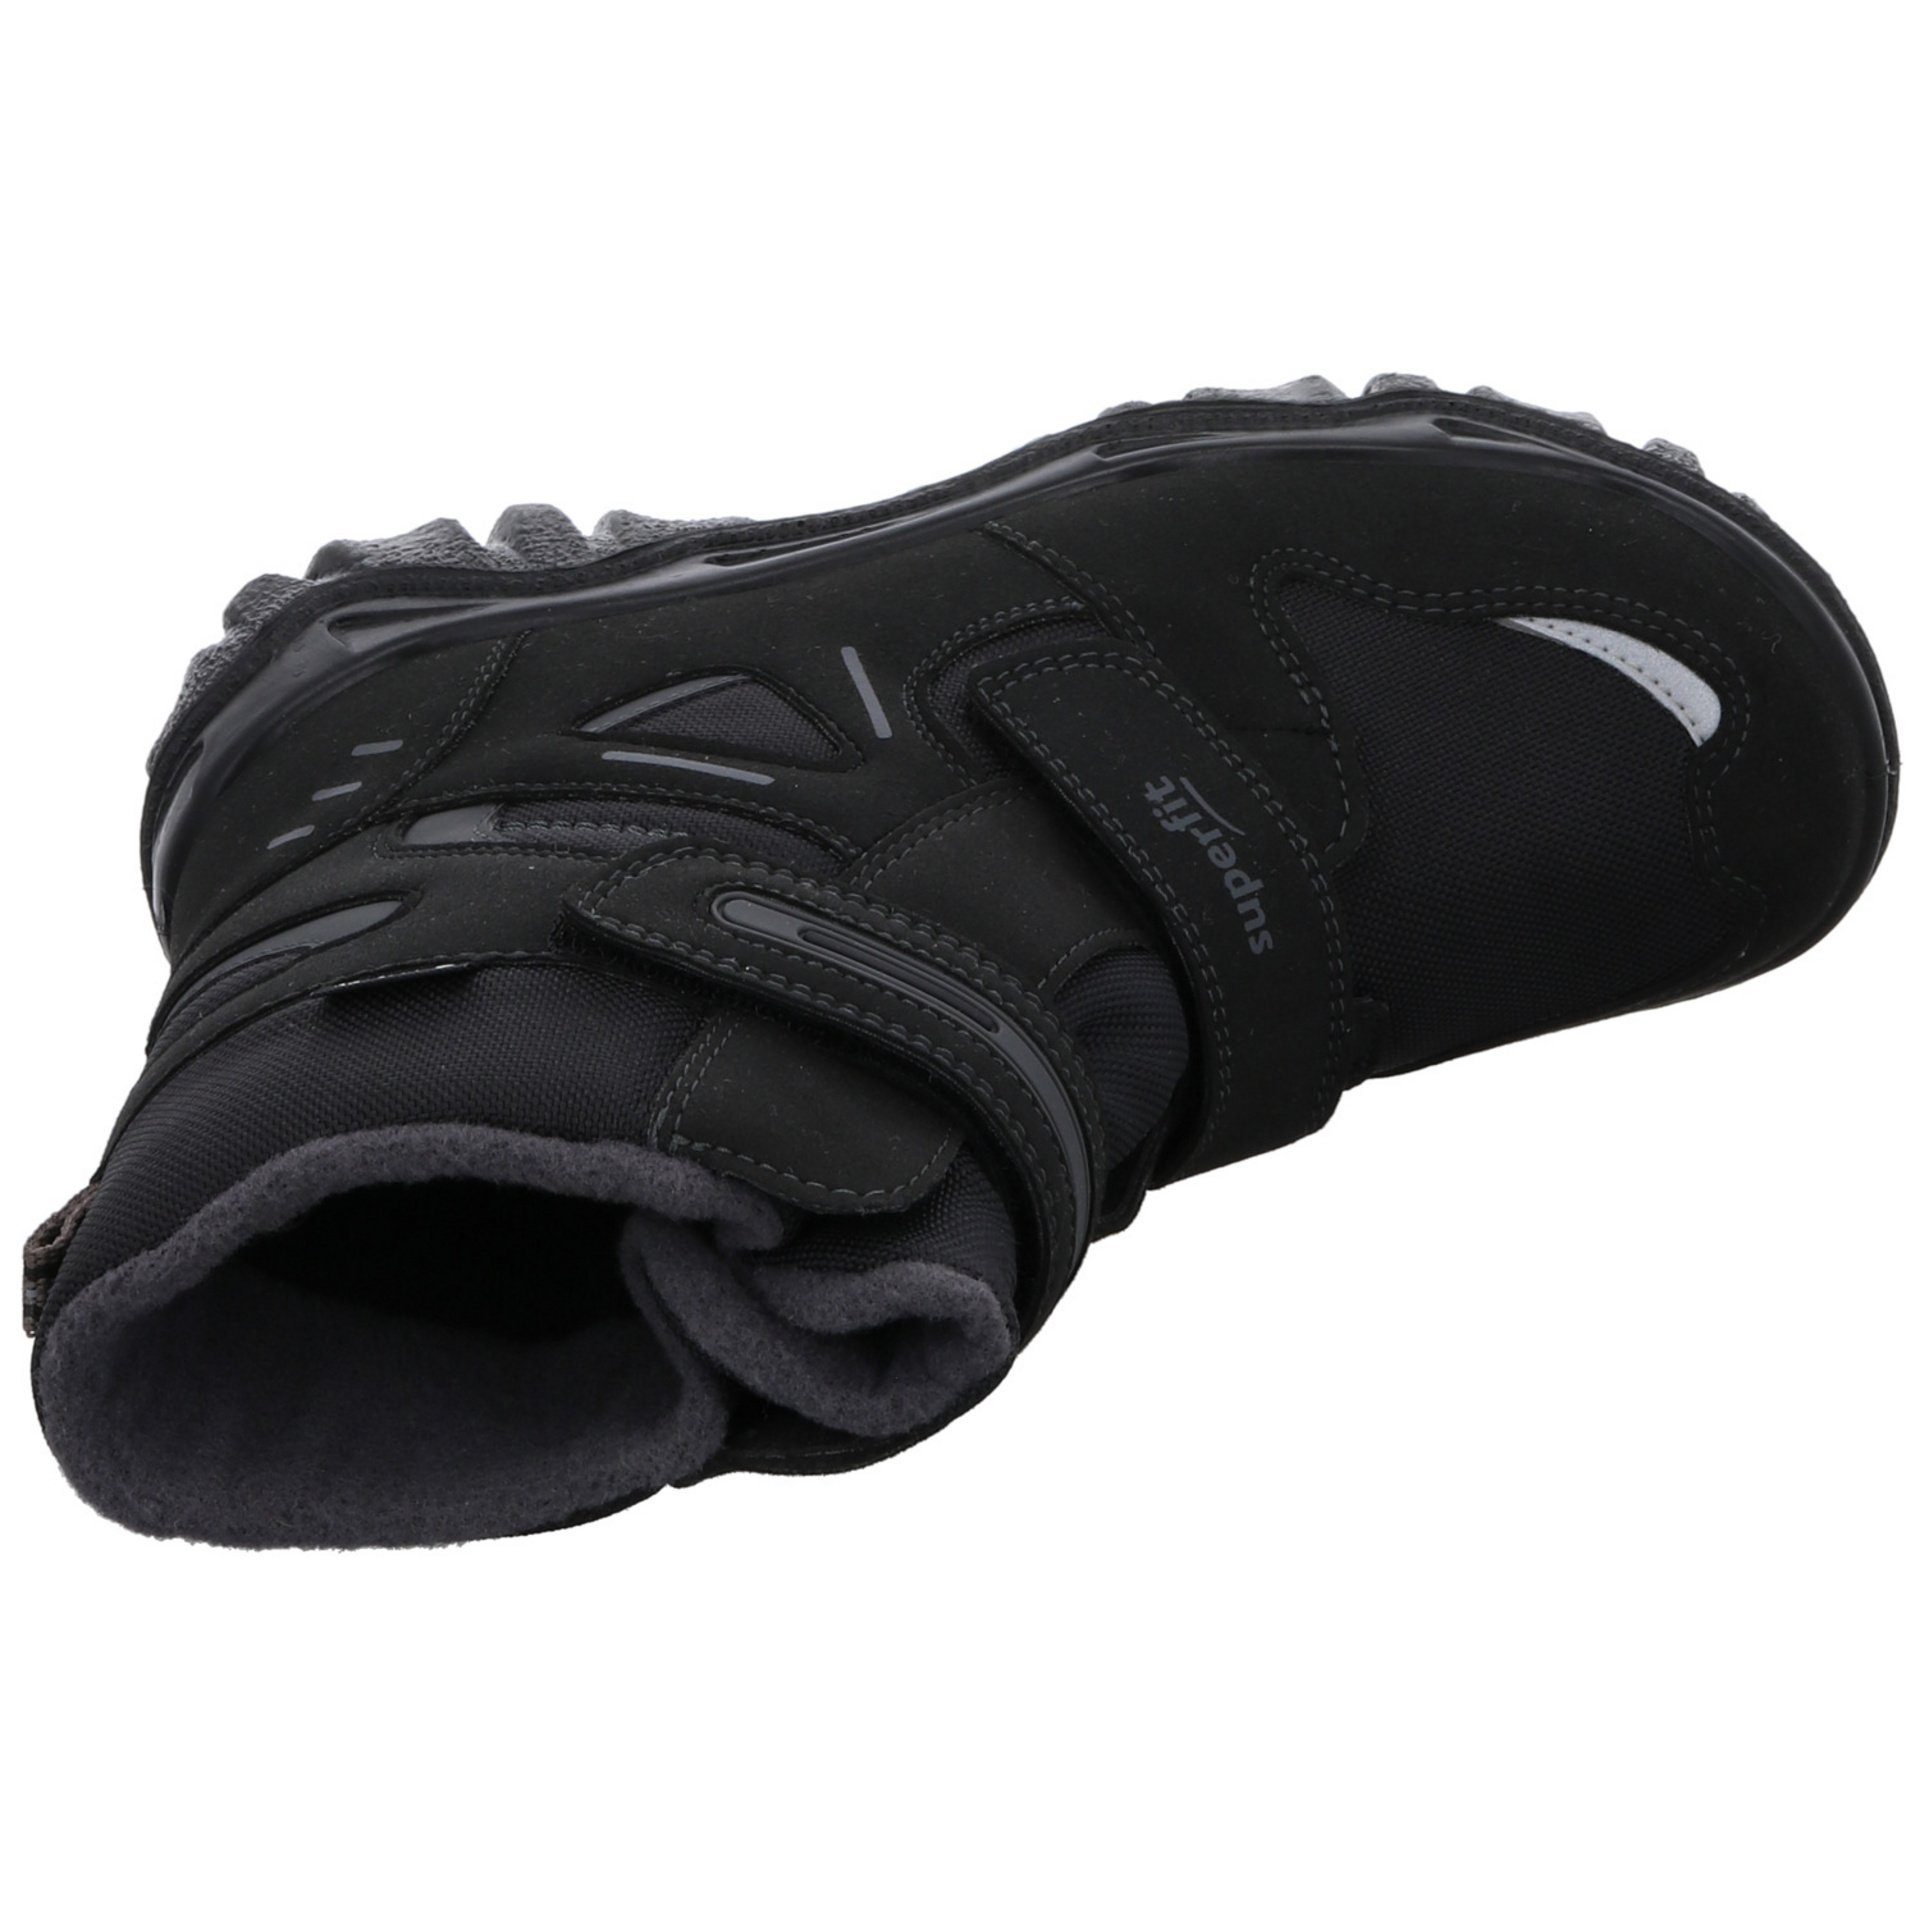 Husky schwarz Stiefel grau Jungen Gore-Tex Superfit Stiefel Synthetikkombination 2 Schuhe Boots